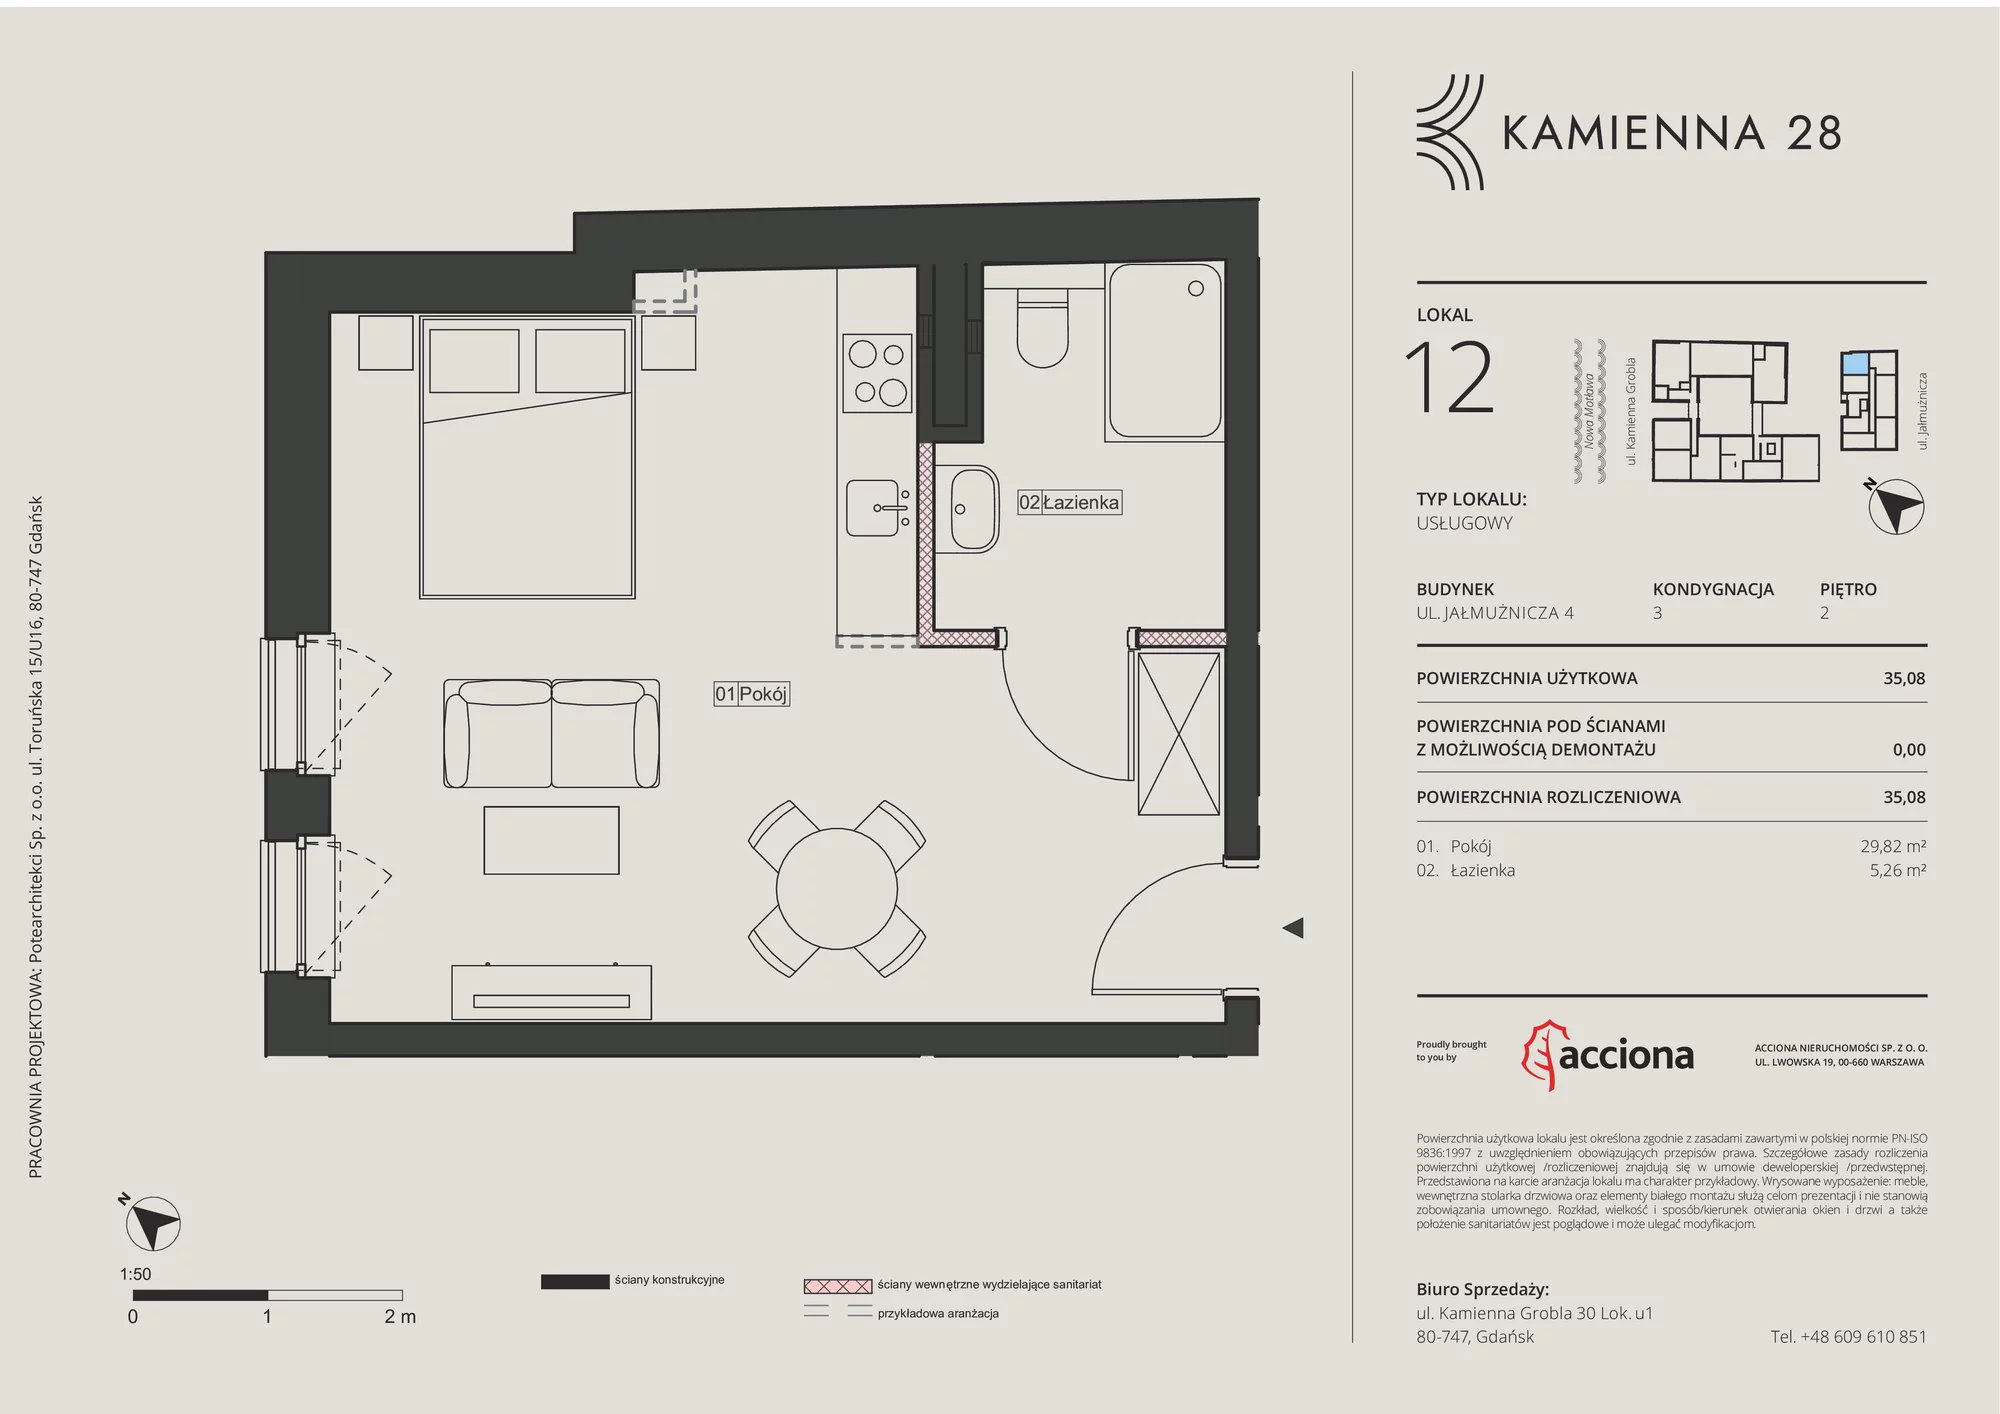 Apartament inwestycyjny 35,08 m², piętro 2, oferta nr 4.12, Kamienna 28 - apartamenty inwestycyjne, Gdańsk, Śródmieście, Dolne Miasto, ul. Jałmużnicza 4